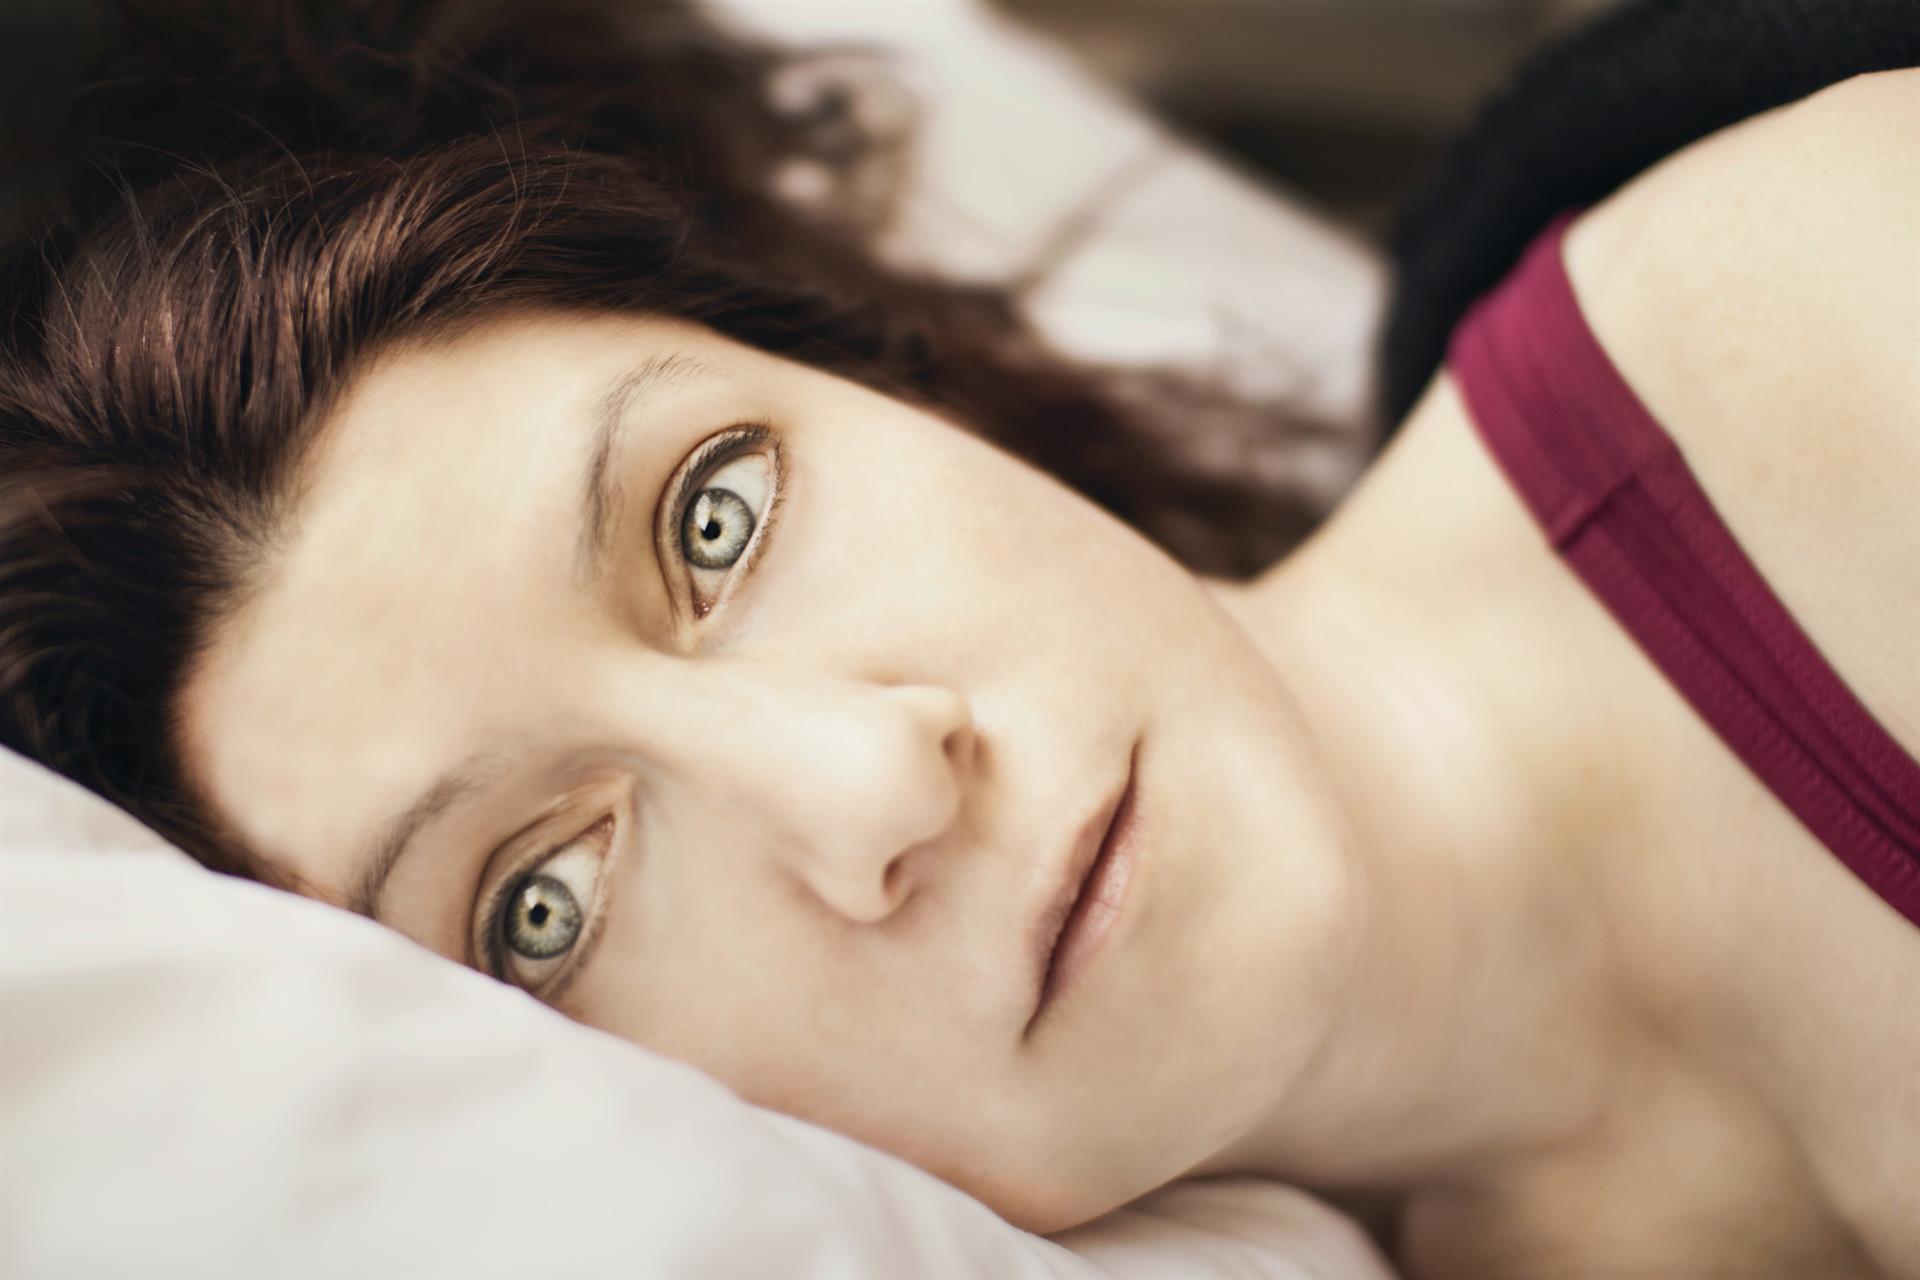 Dormir cinco horas o menos a los 50 años eleva el riesgo de enfermedades crónicas